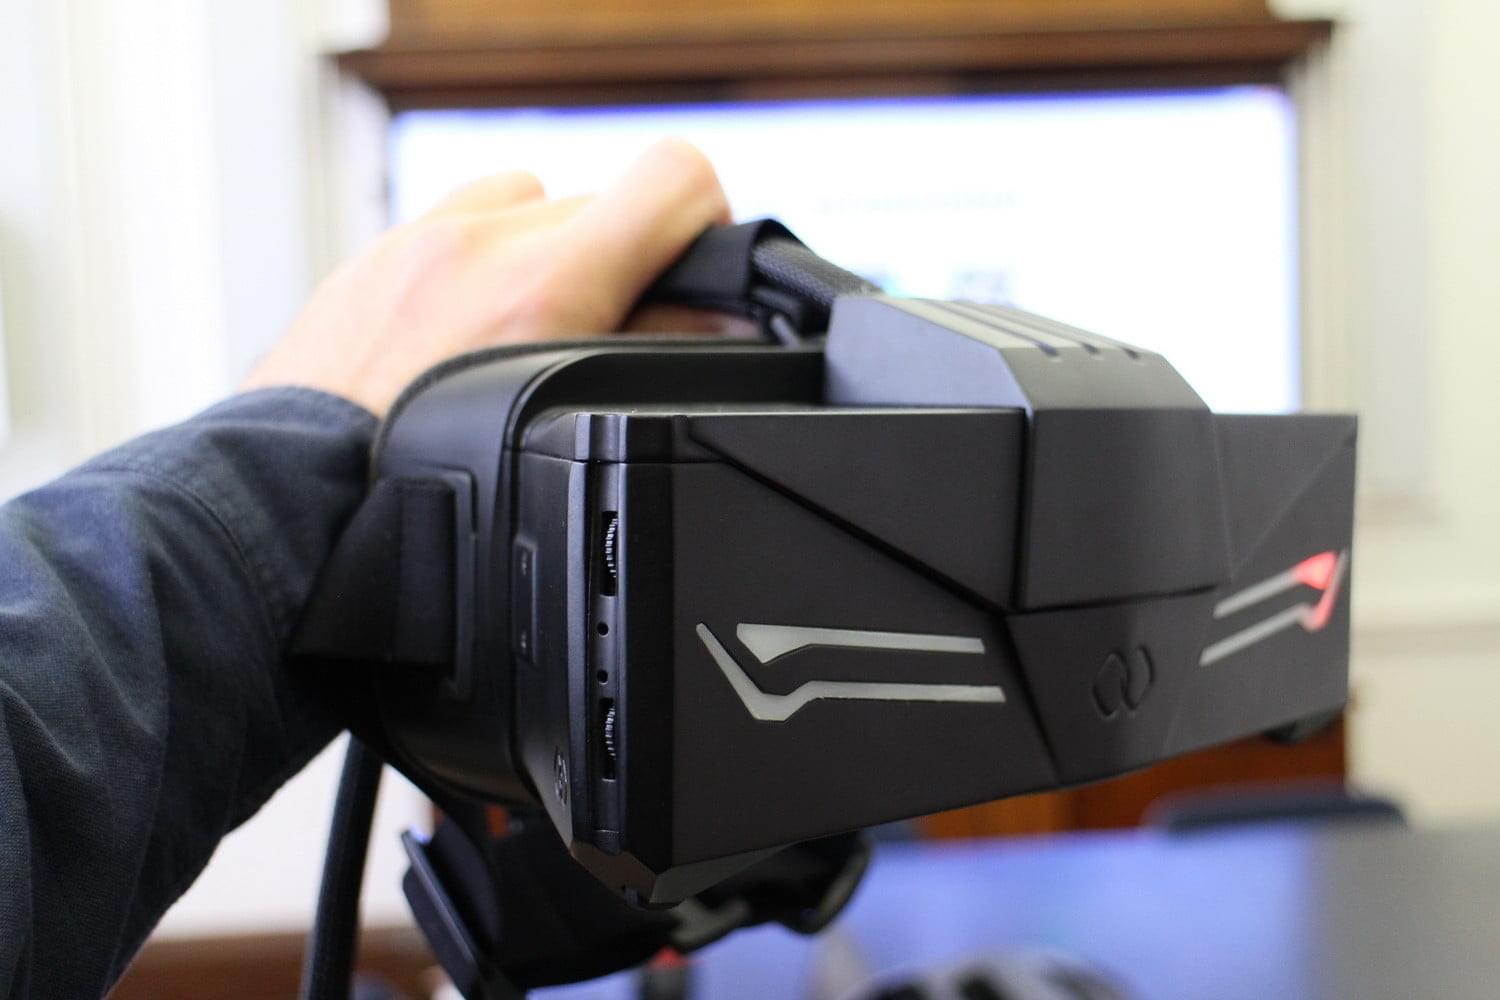 Infinitus Prime TVR, или Какое VR-устройство является лучшим?